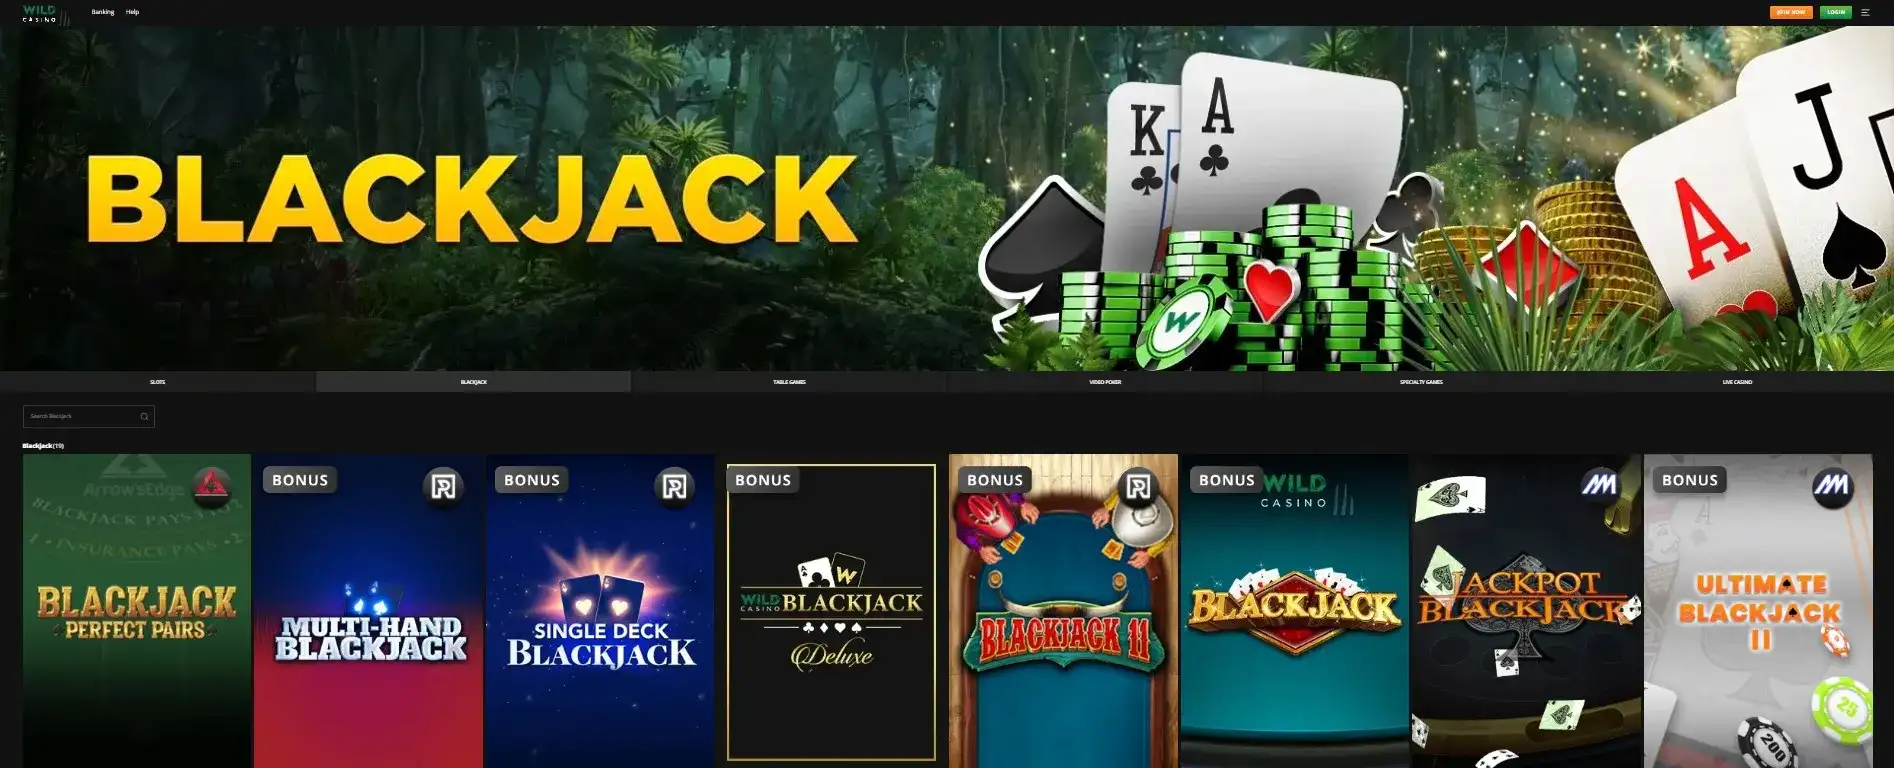 blackjack casinos online wild